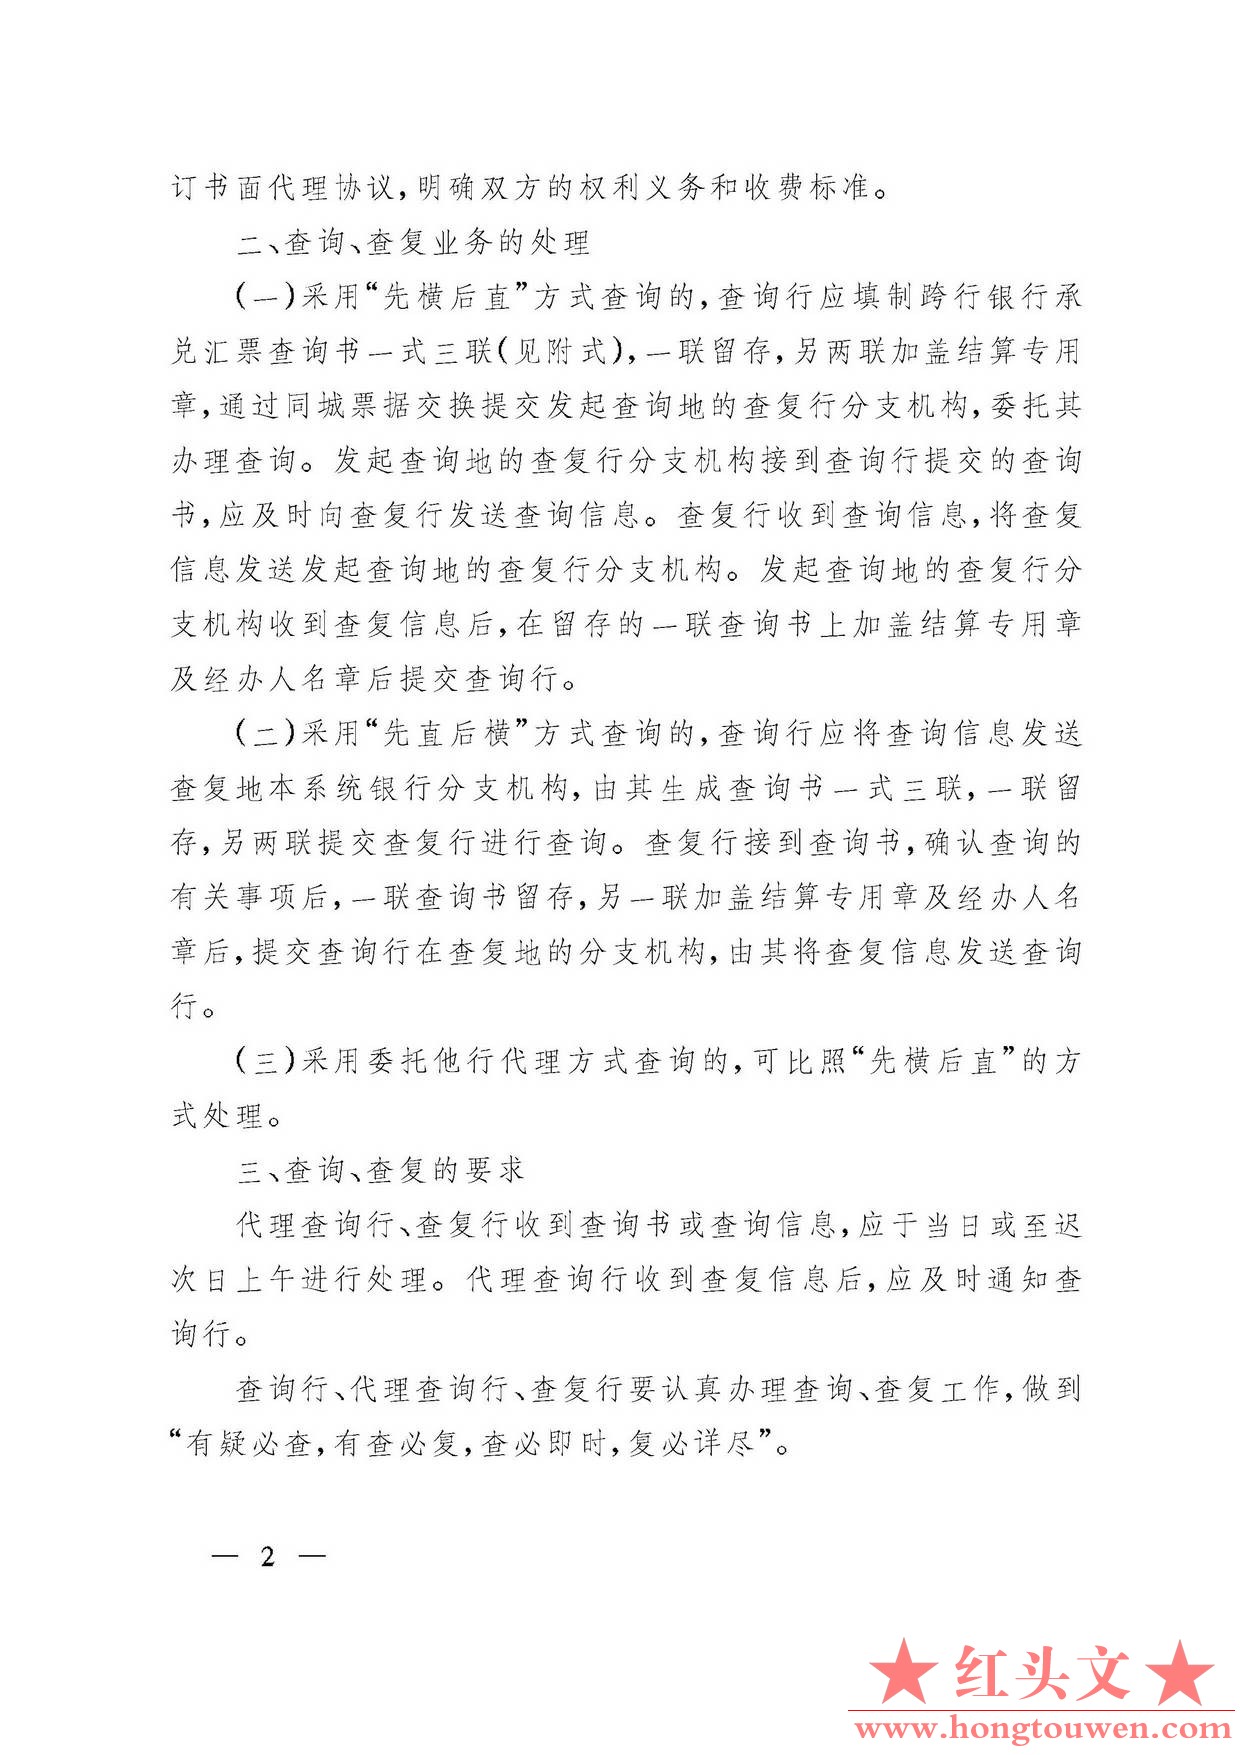 银发[2002]63号-中国人民银行关于商业银行跨行银行承兑汇票查询、查复业务处理问题的.jpg